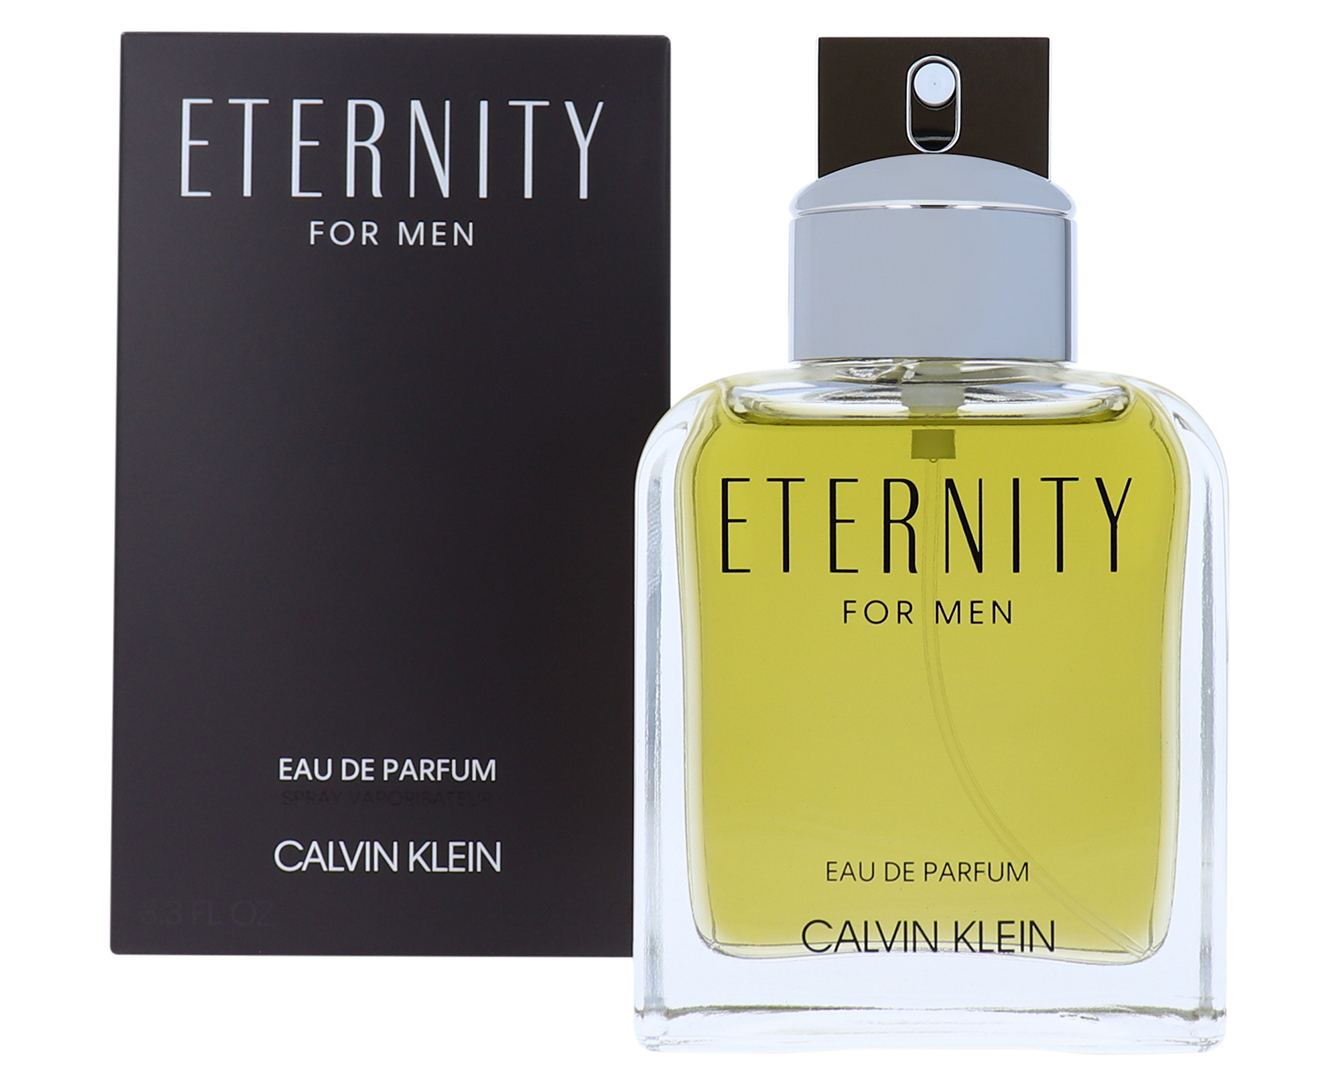 Calvin Klein Eternity For Men EDP Perfume 100mL 